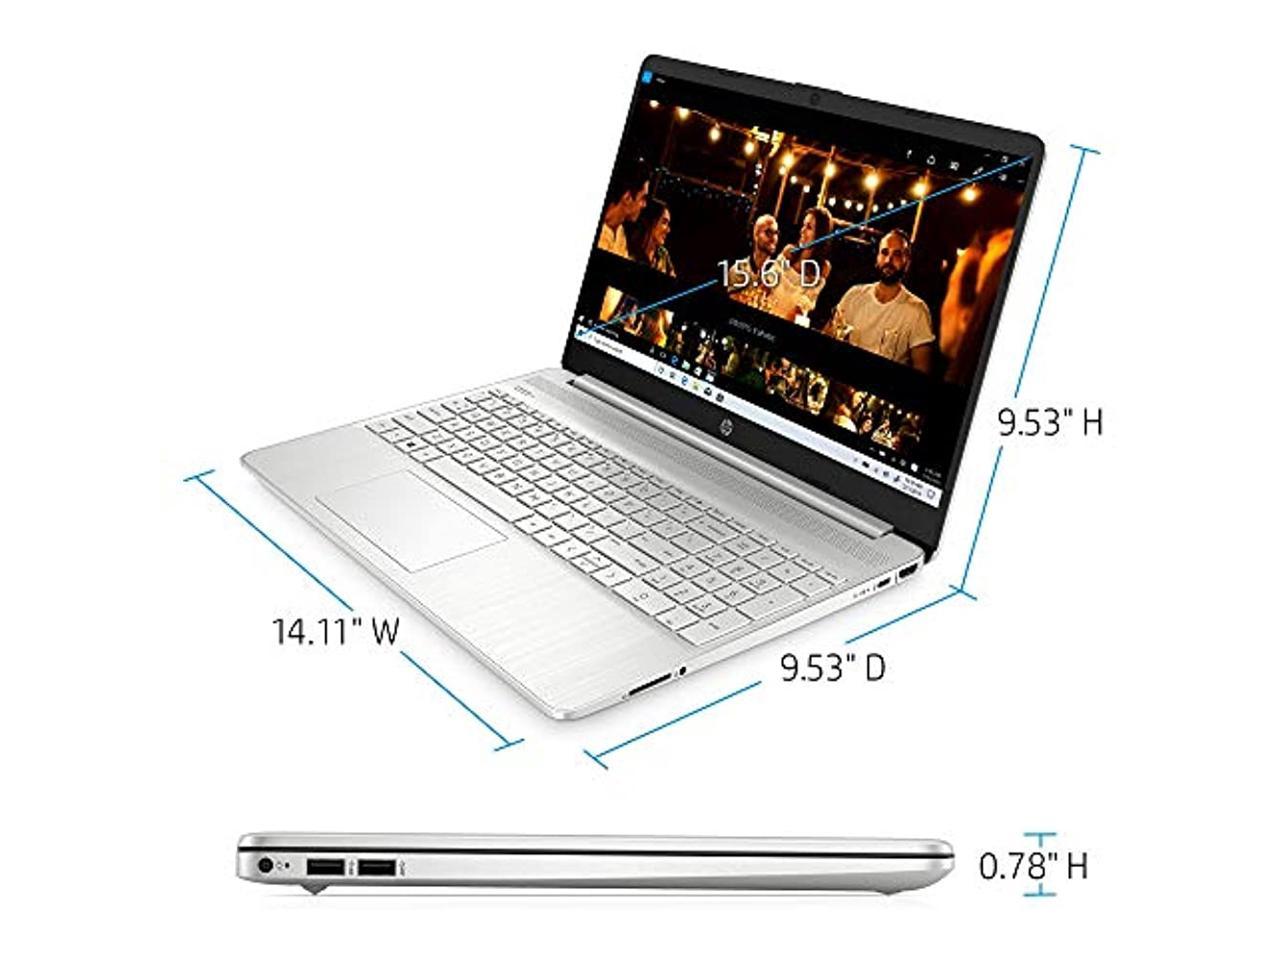 Hp 15 Inch Touchscreen Laptop Amd Ryzen 3 3250u 8 Gb Ram 256 Gb Ssd Windows 10 Home In S 9186